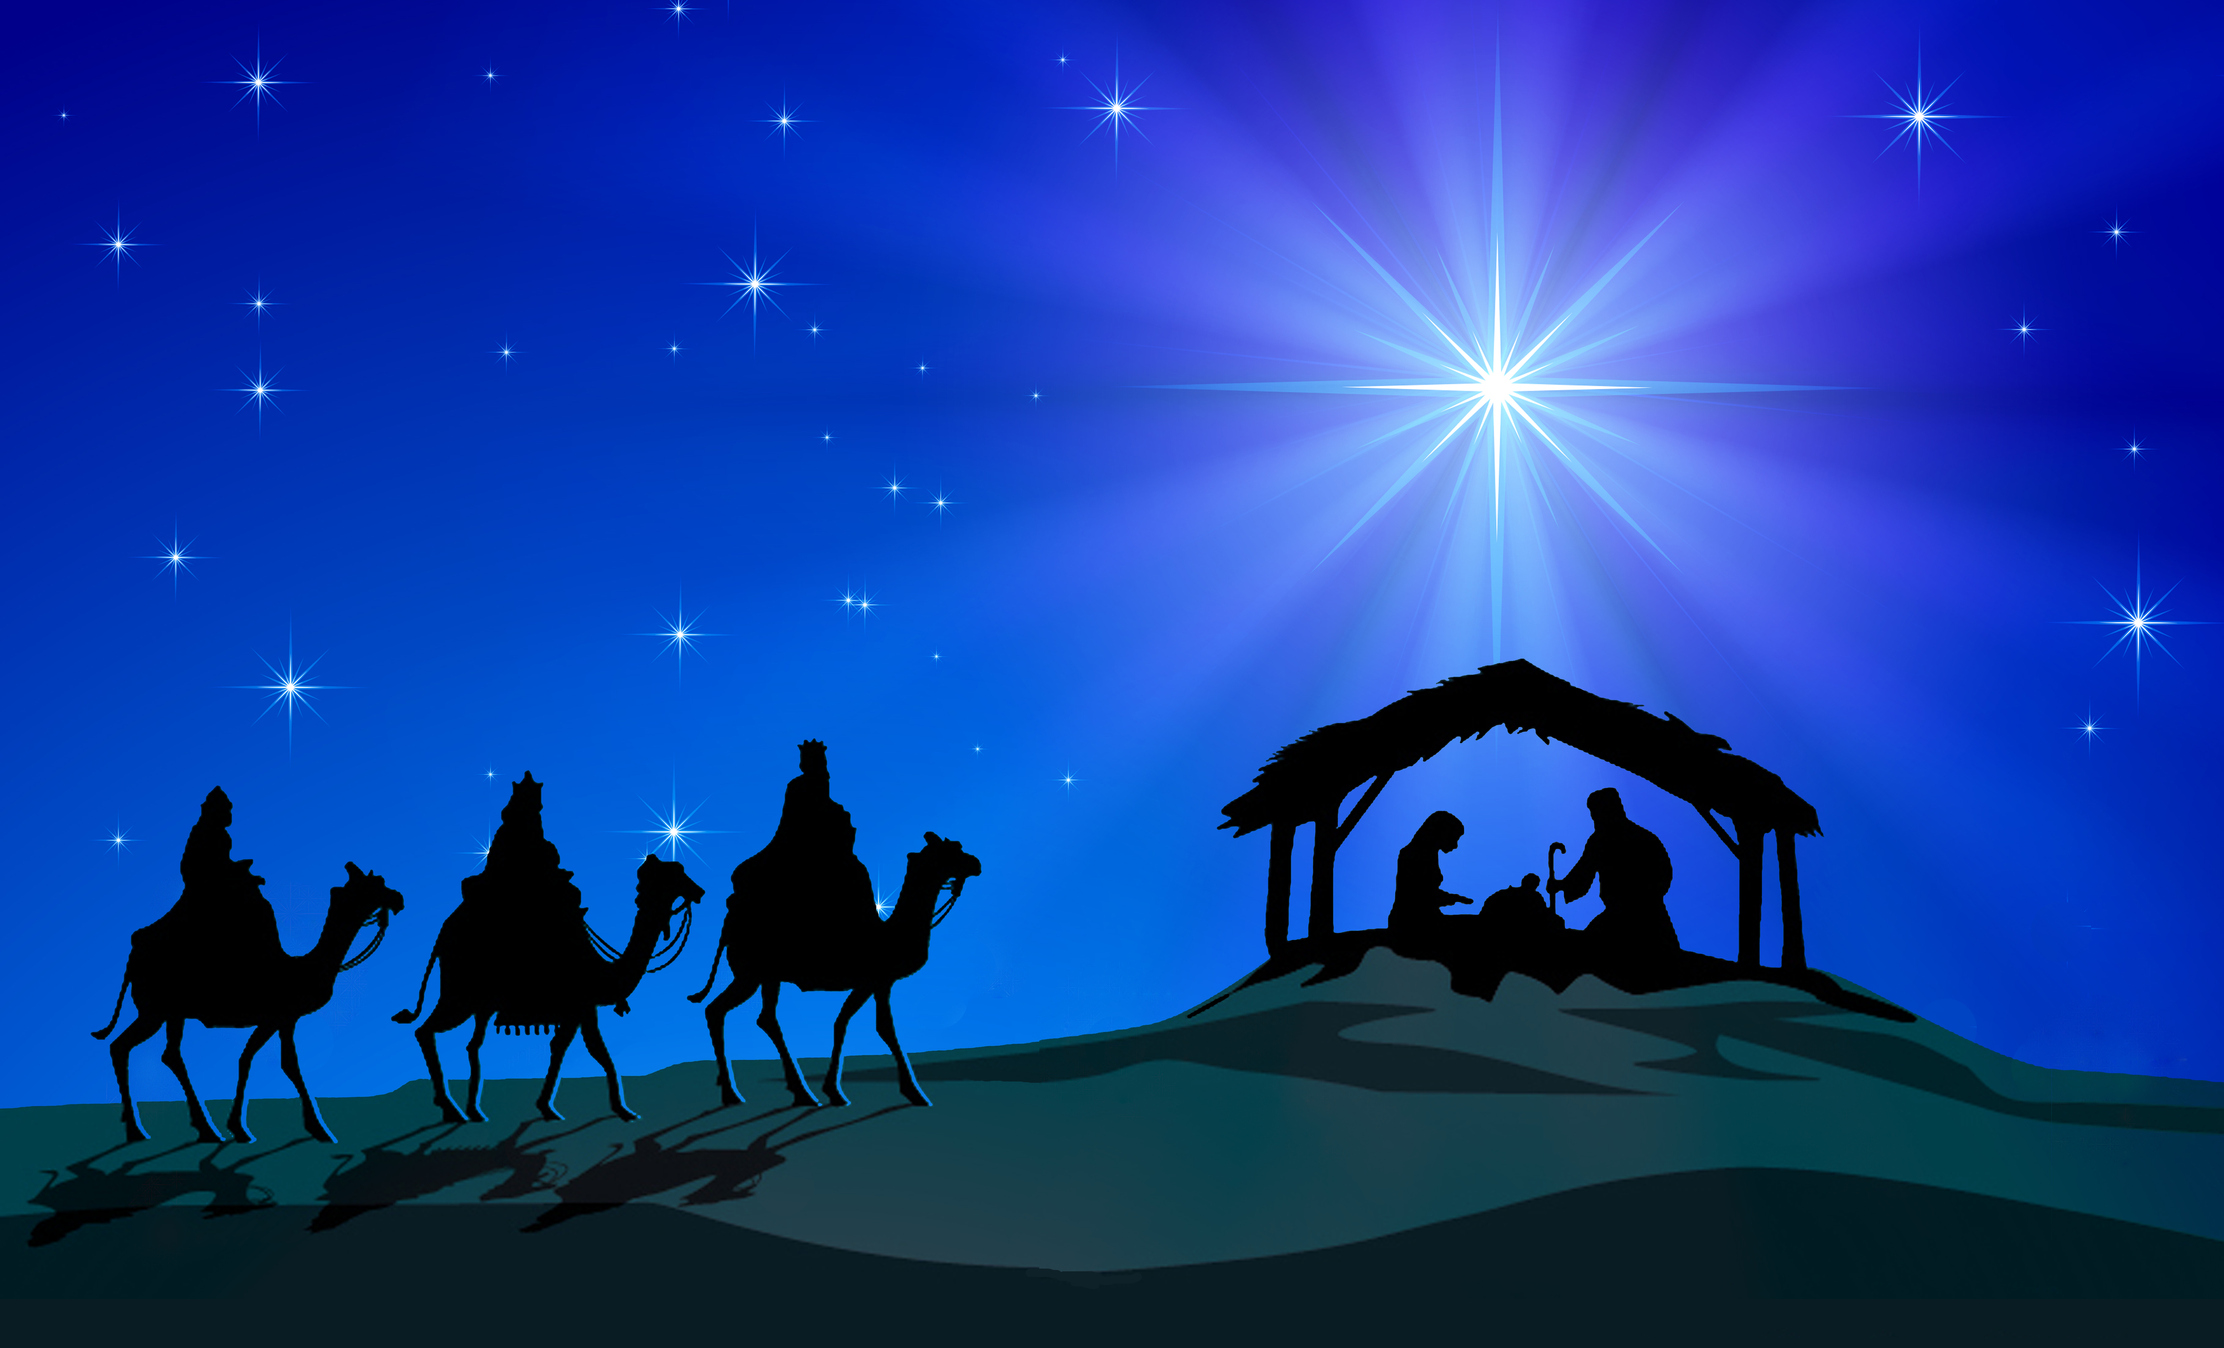 Imagem retratando os Três Reis Magos seguindo o brilho da Estrela de Natal para chegar até o local de nascimento de Jesus